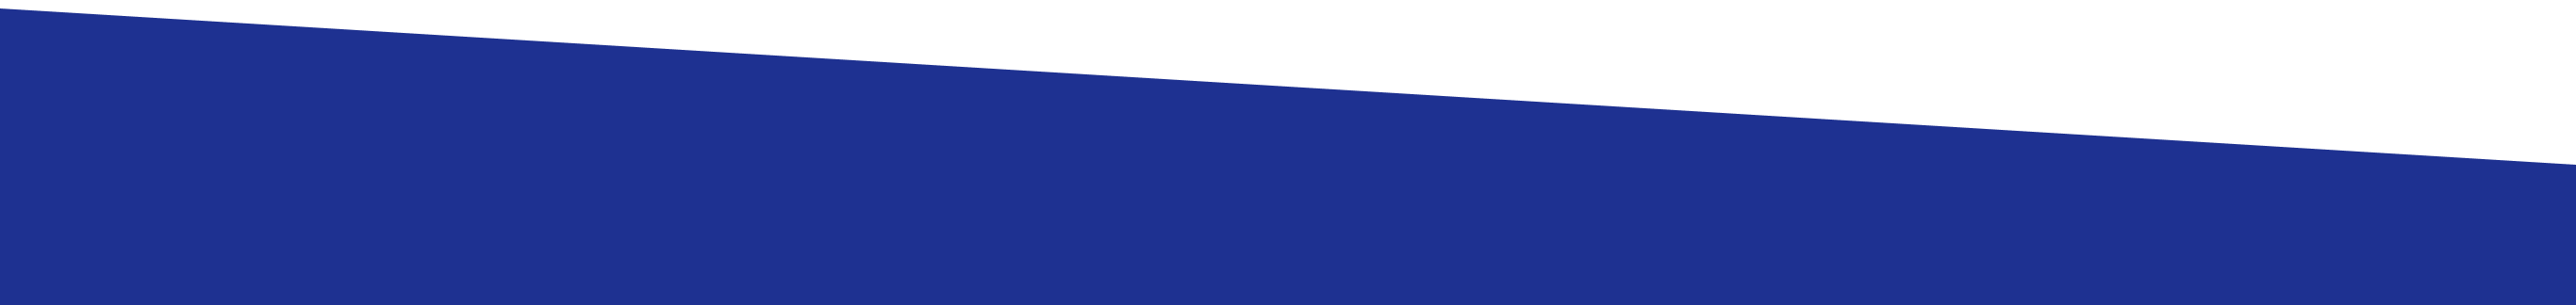 Bandeau oblique de couleur bleue